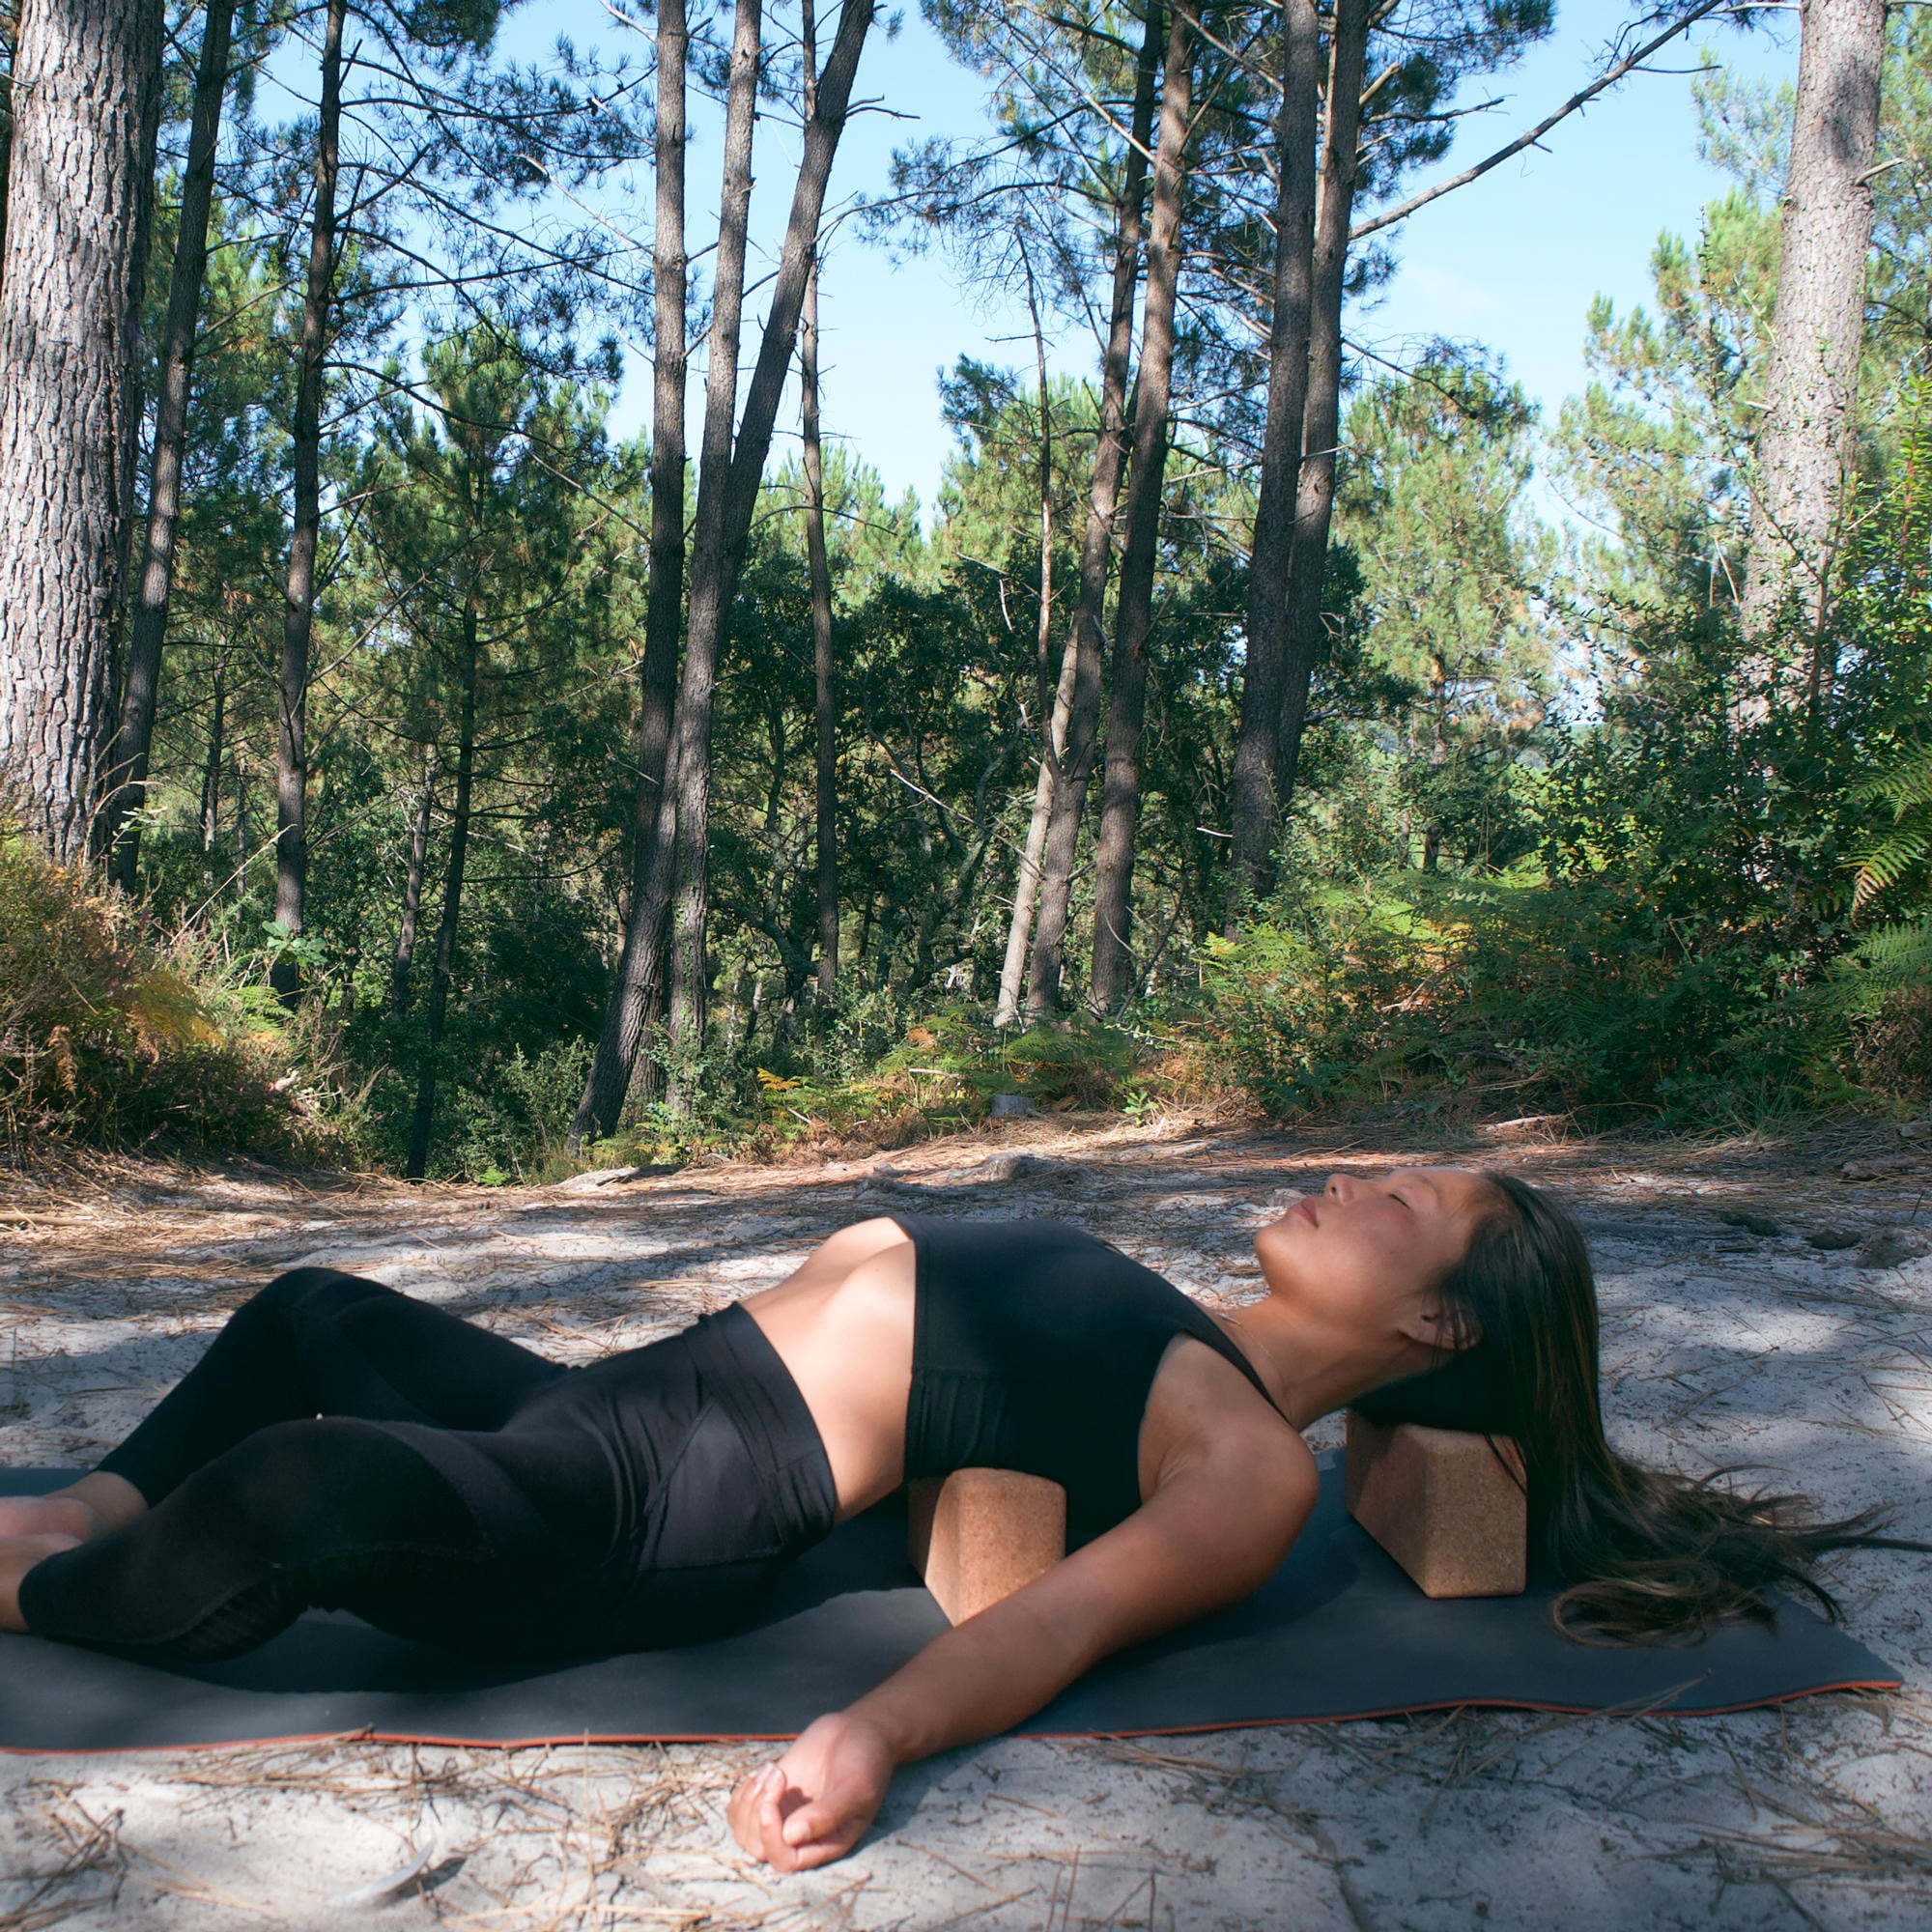 Utiliser une brique de yoga : Guide d'utilisation en 20 postures